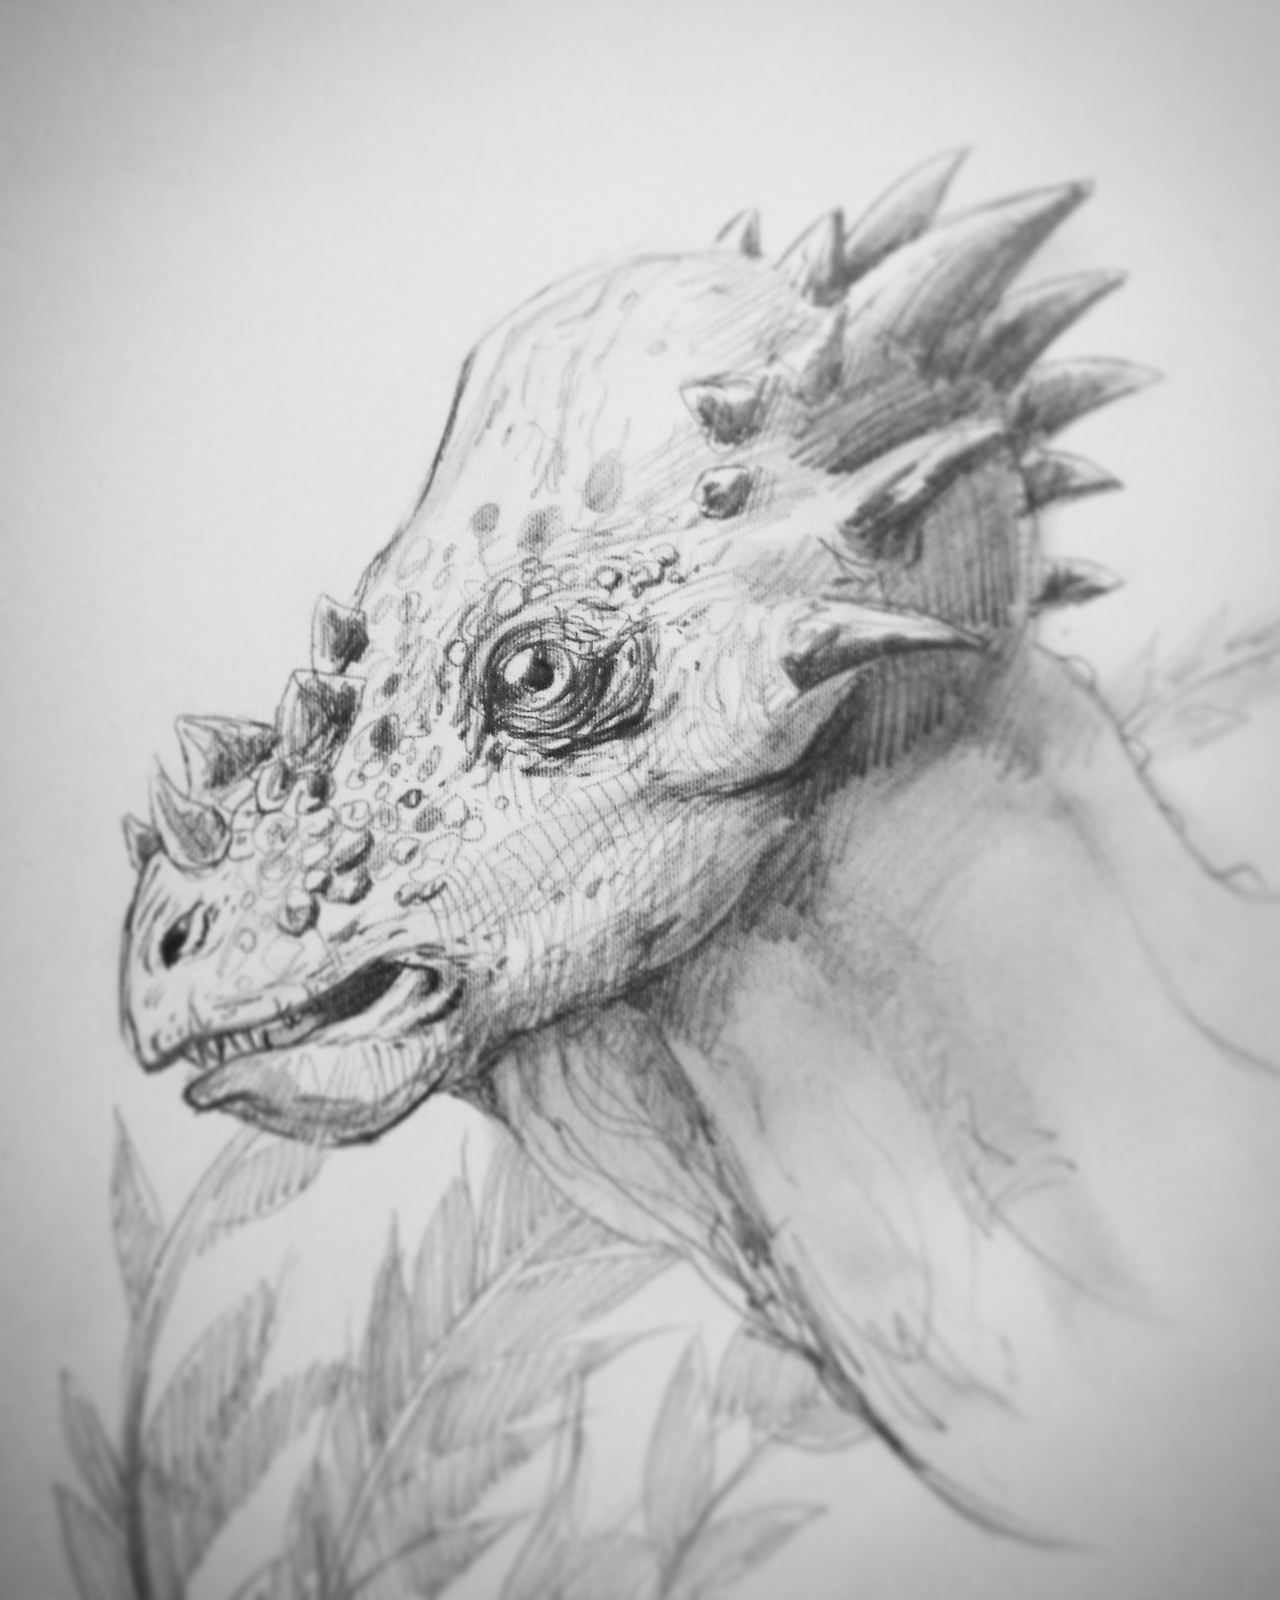 Stygimoloch

https://www.kickstarter.com/projects/868769538/primeval-kings-the-art-of-ken-kokoszka